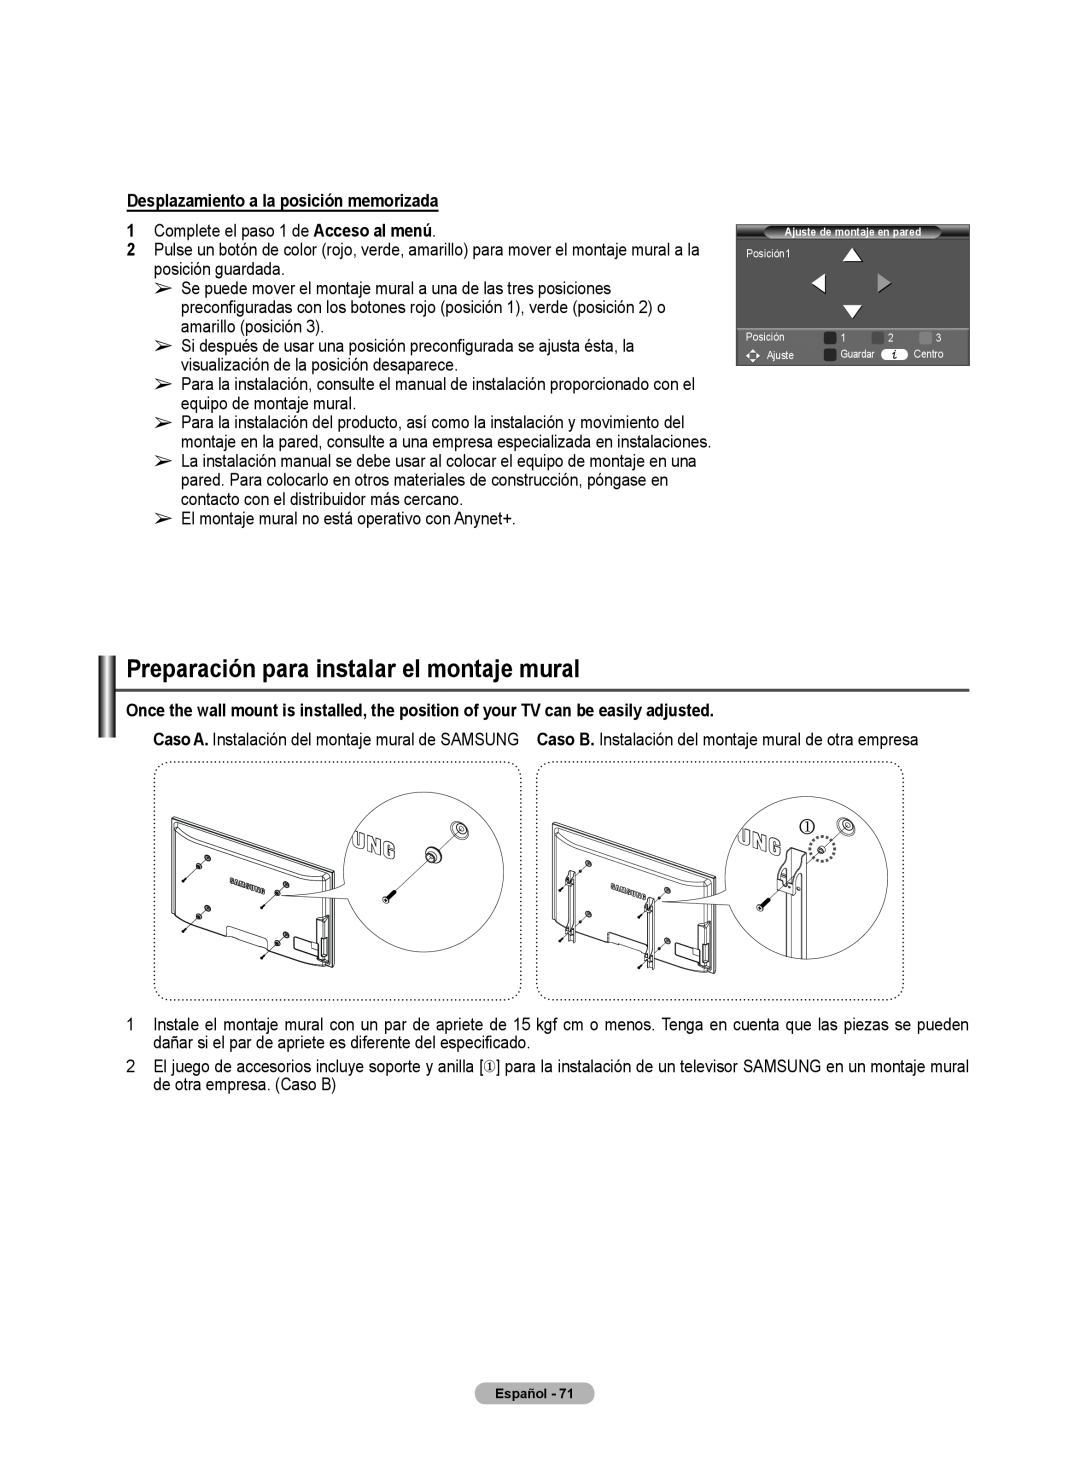 Samsung 460 user manual Preparación para instalar el montaje mural, Desplazamiento a la posición memorizada 